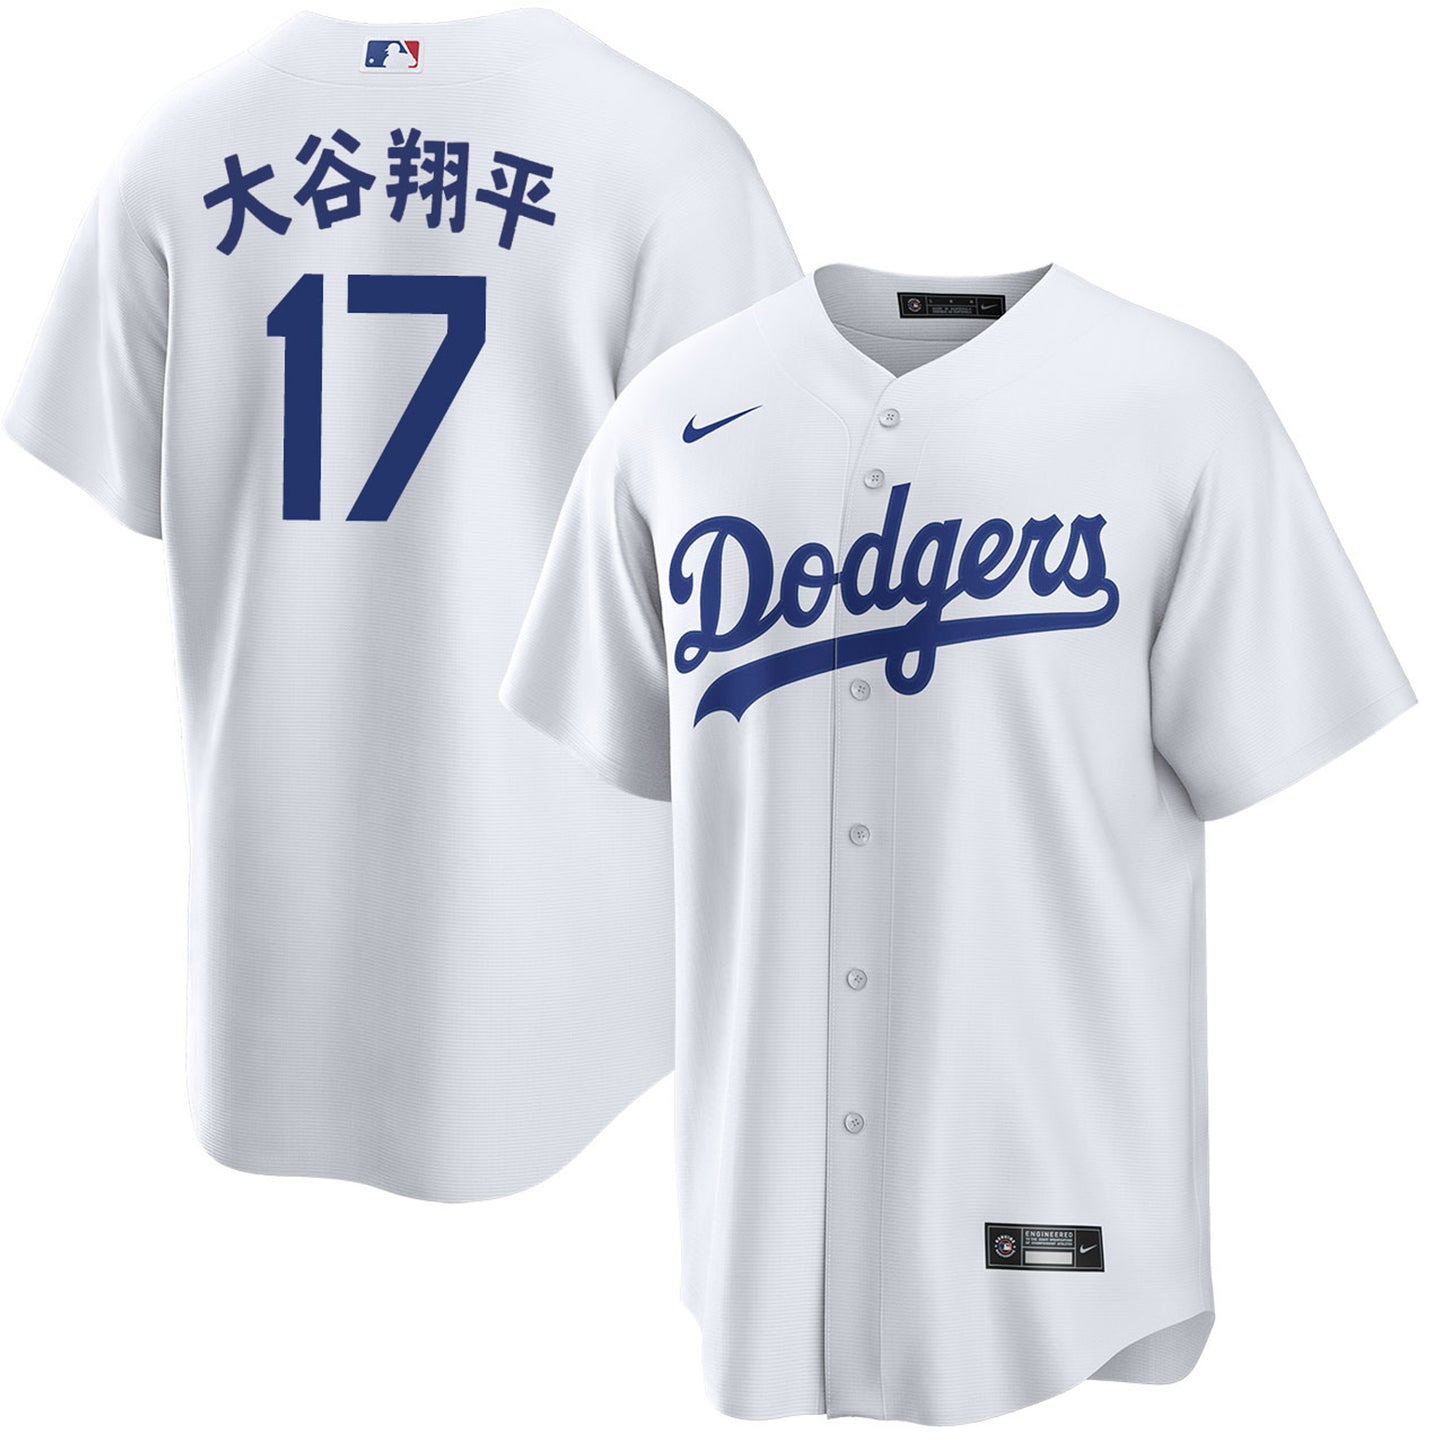 Youth Shohei Ohtani Kanji Los Angeles Dodgers Home Jersey